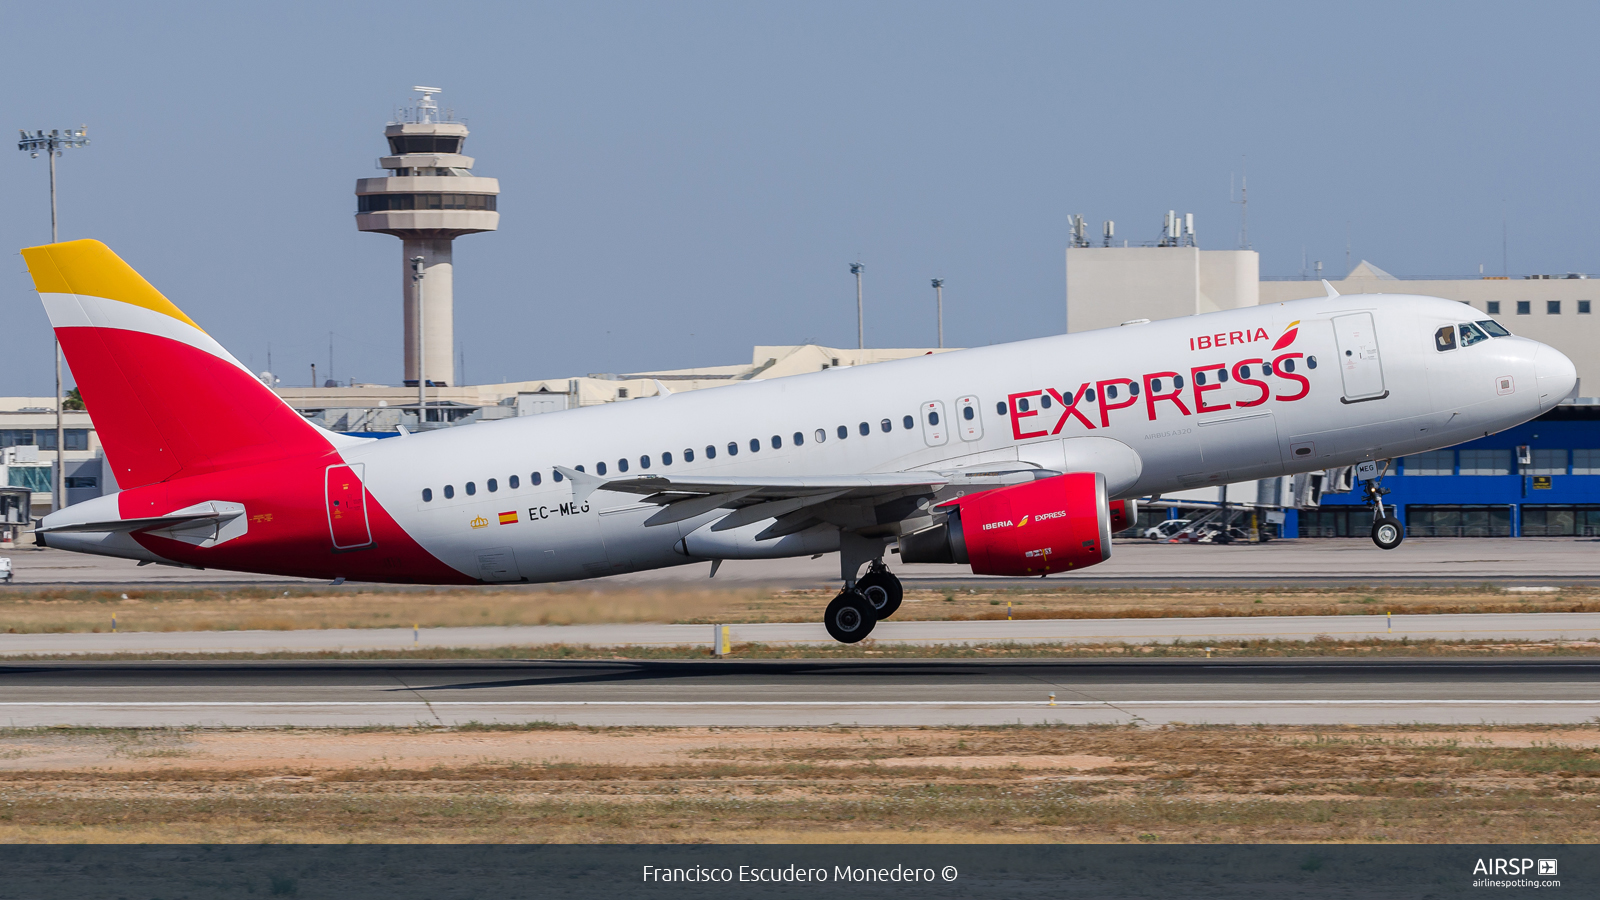 Iberia Express  Airbus A320  EC-MEG